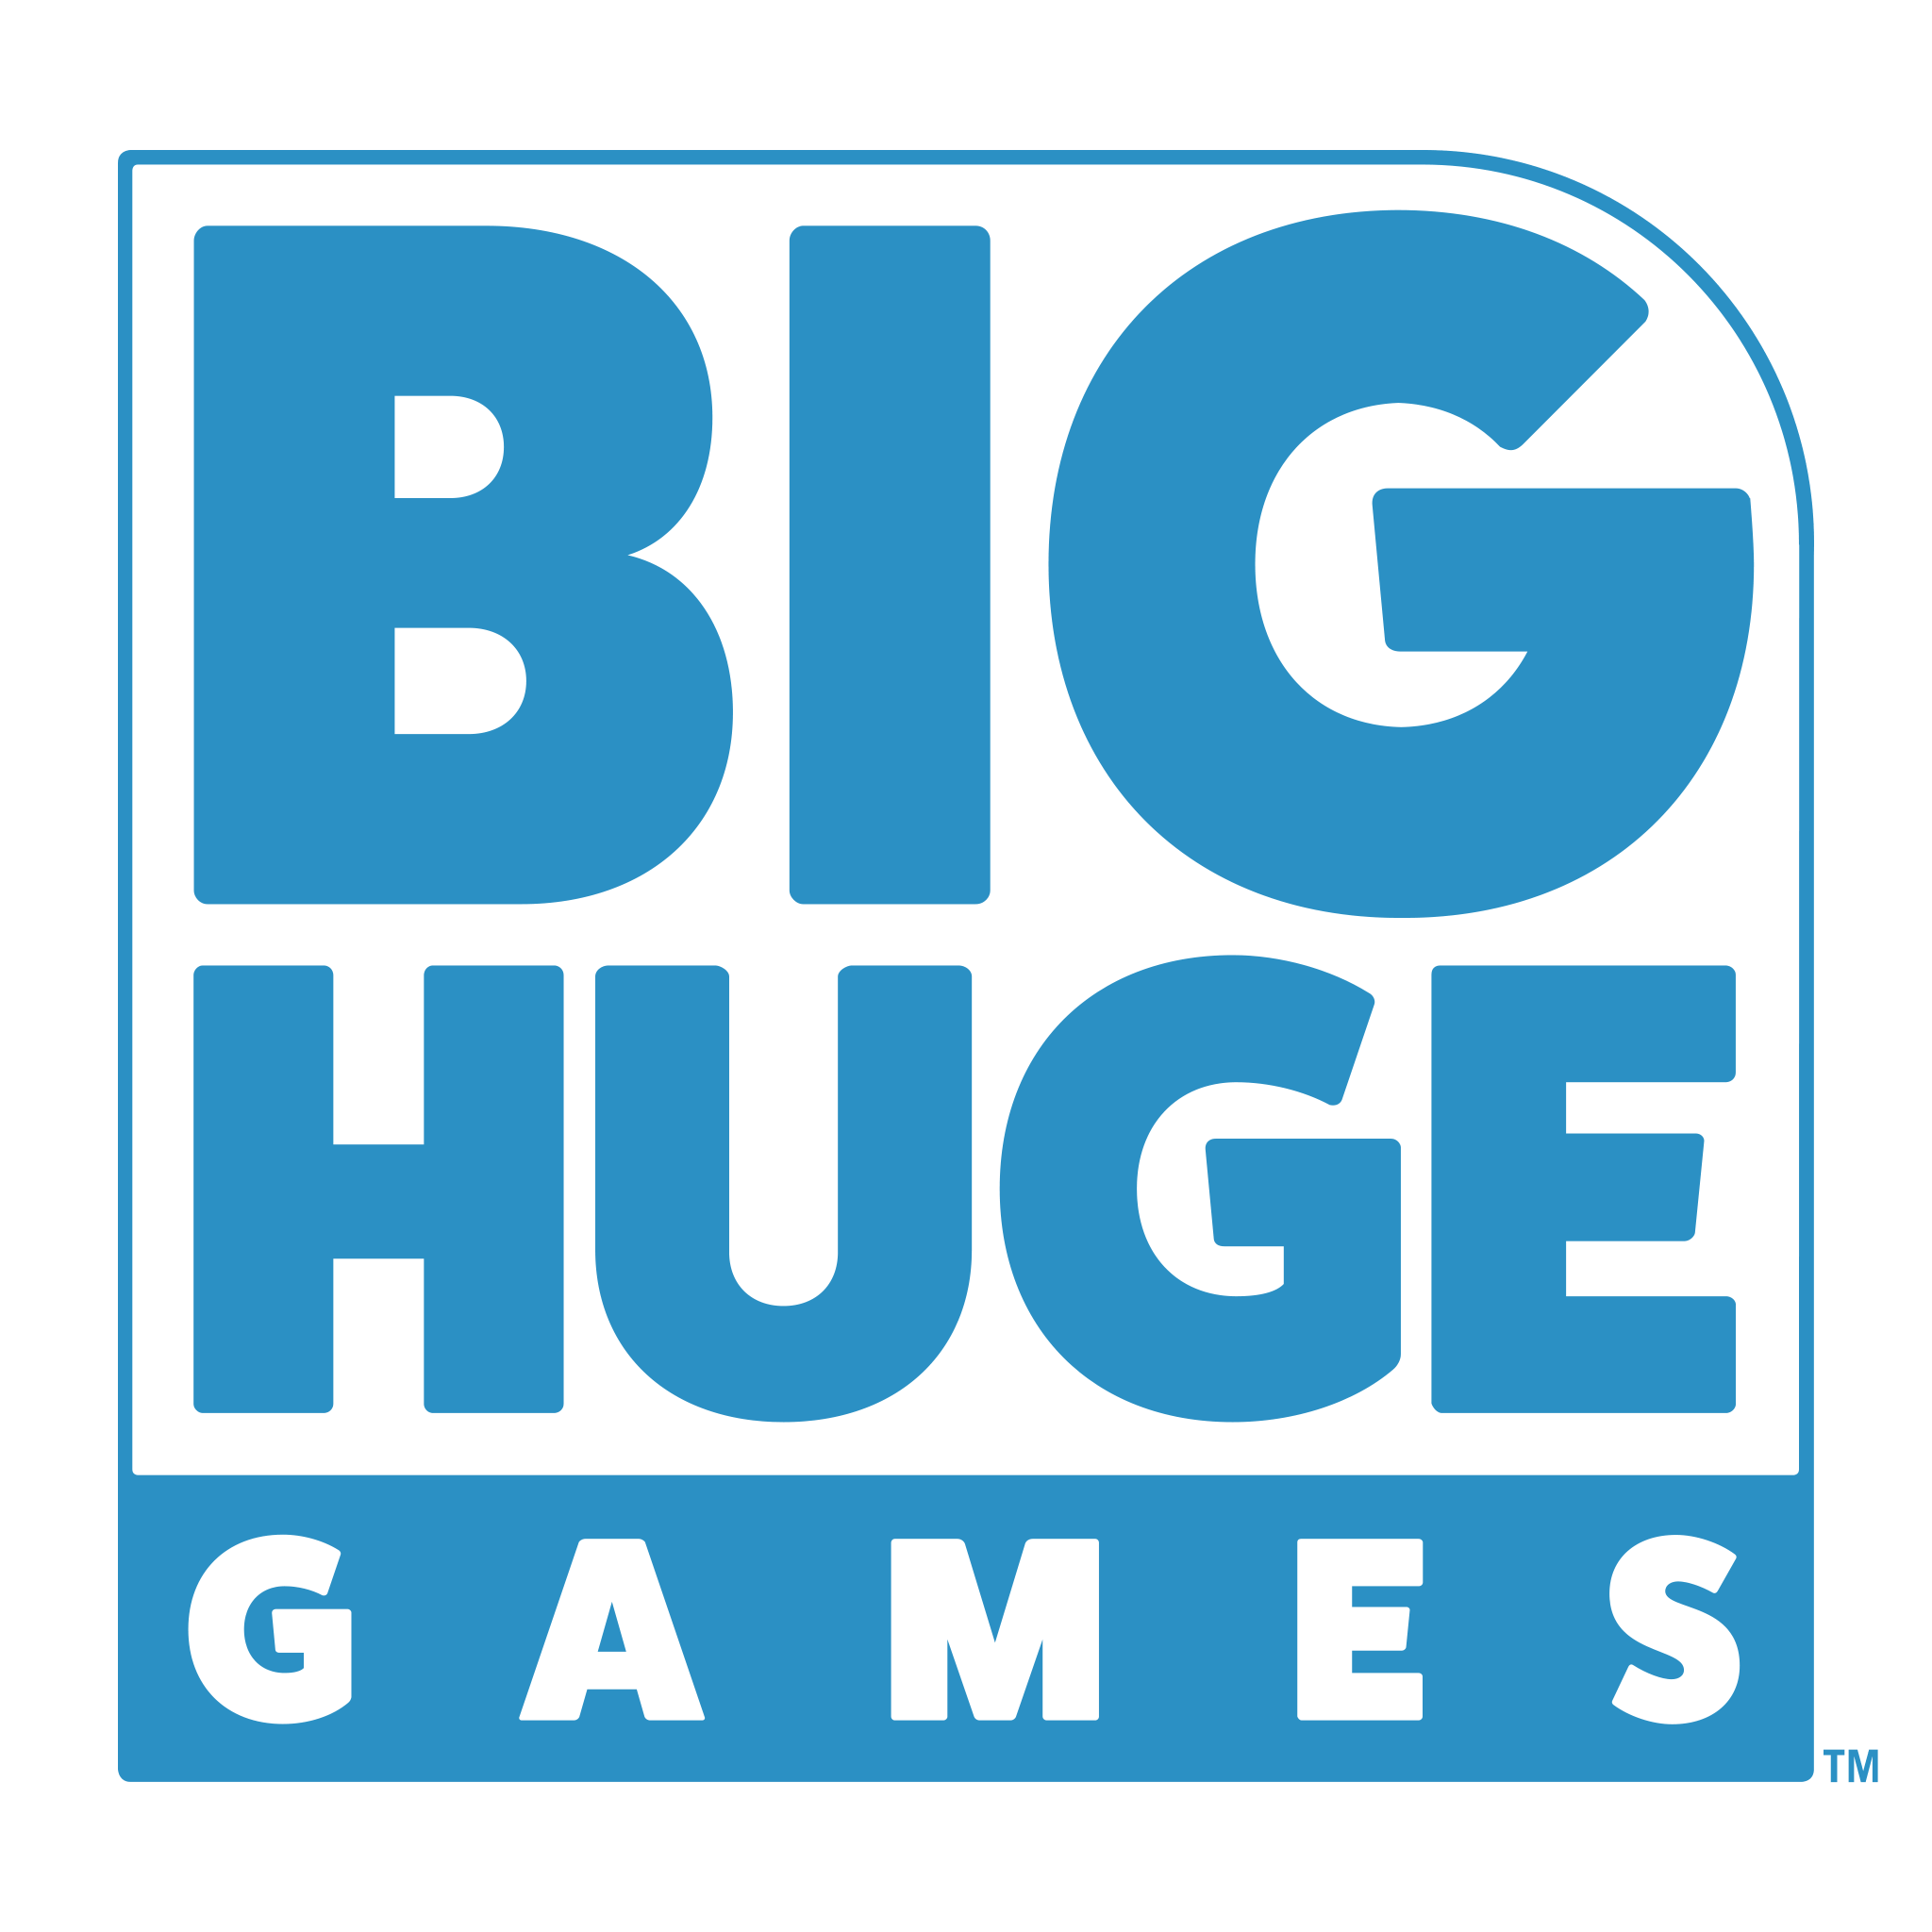 Big Huge Games